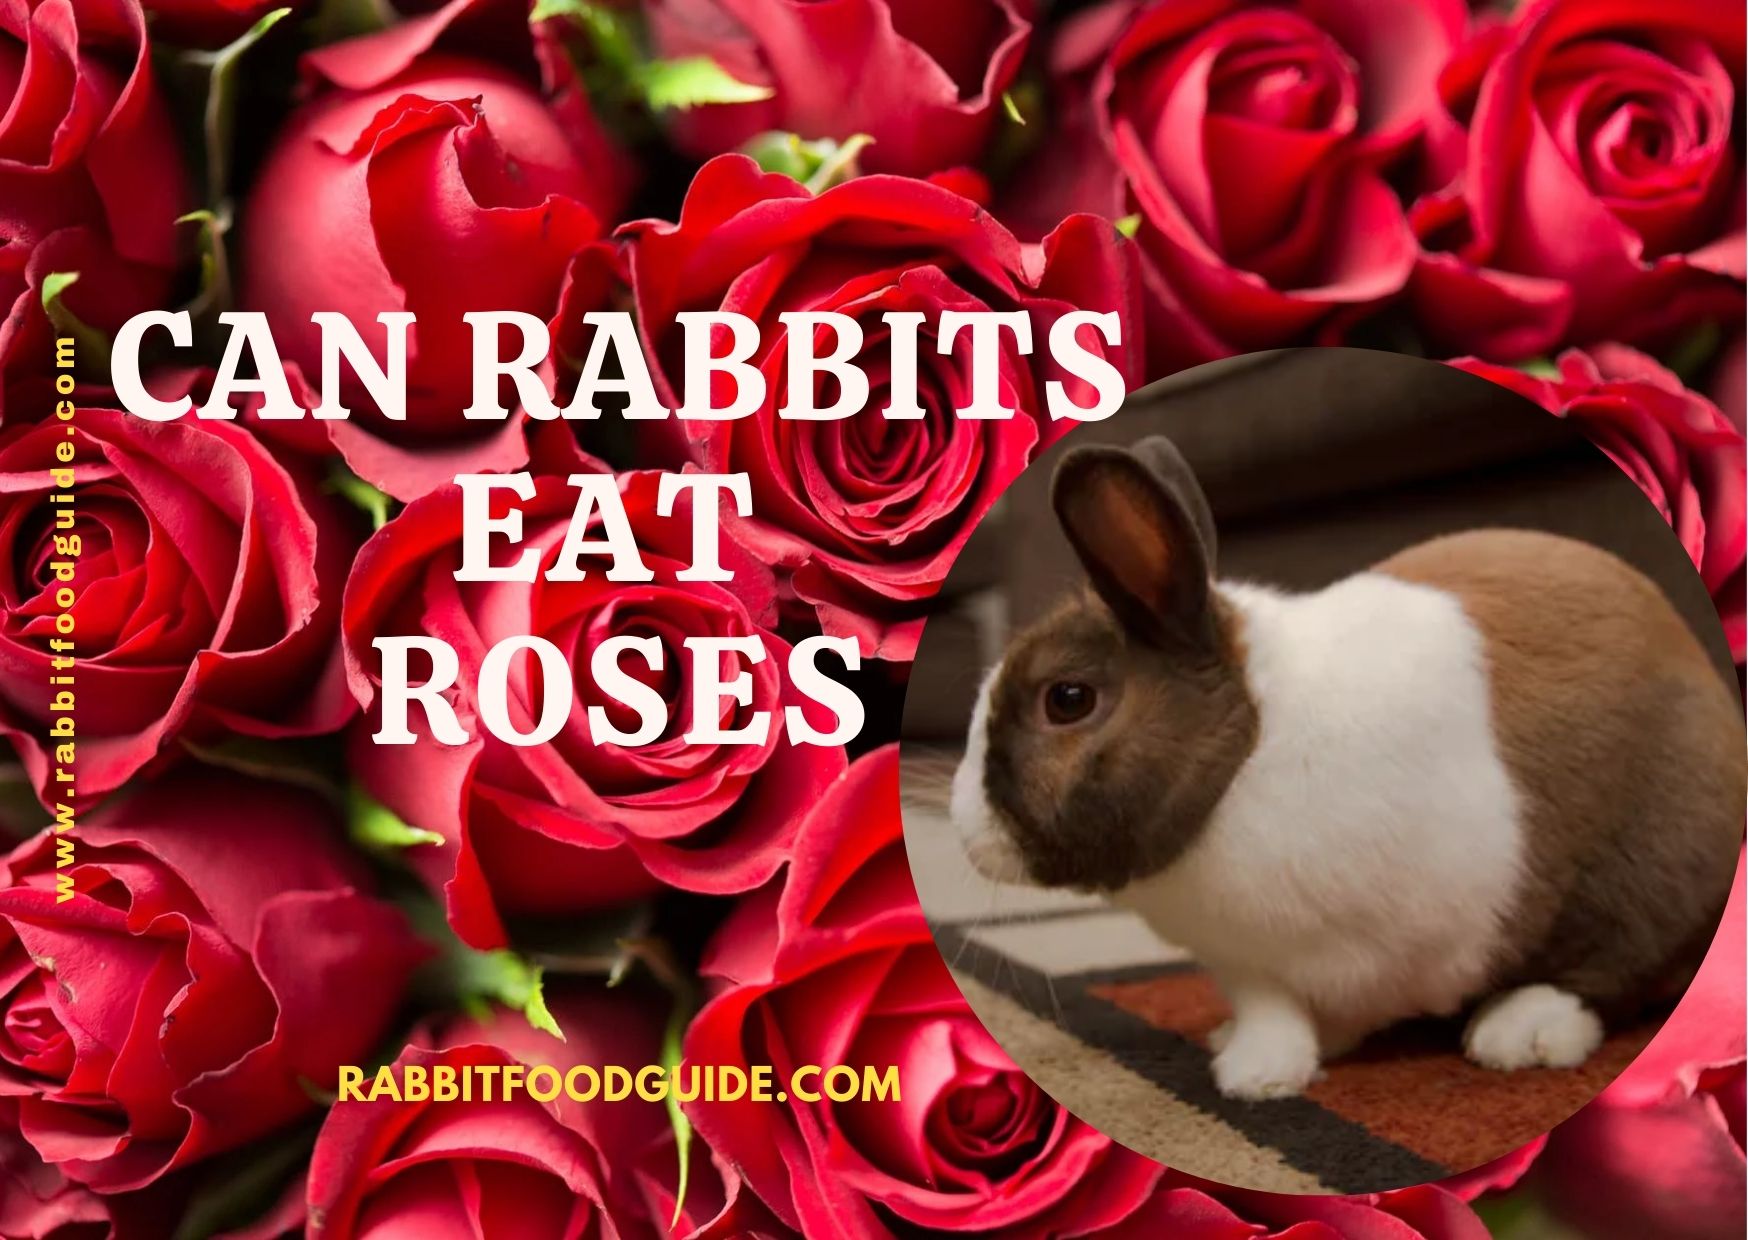 Can rabbits eat rose petals